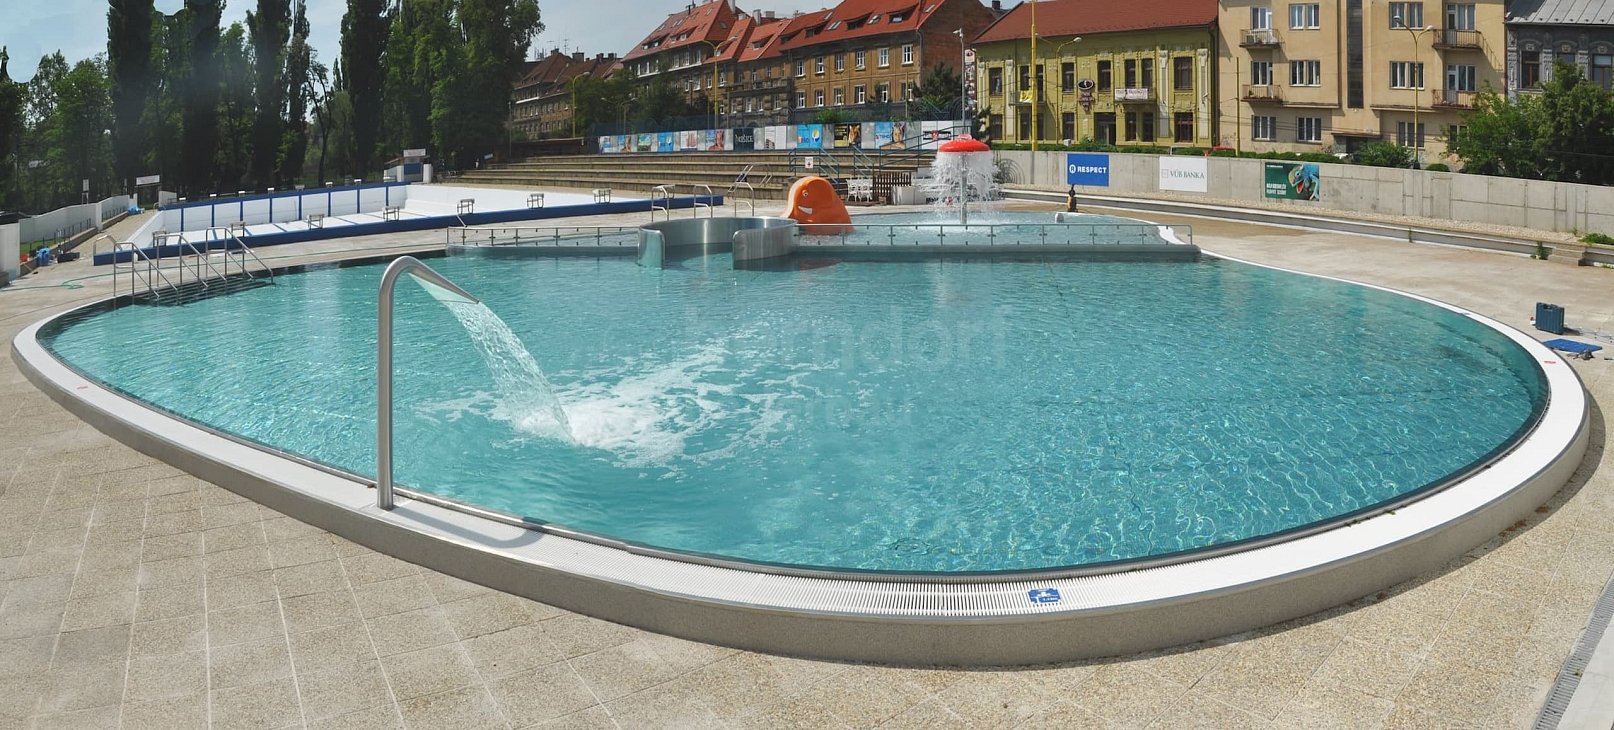 Swimming pool Červená hviezda Košice